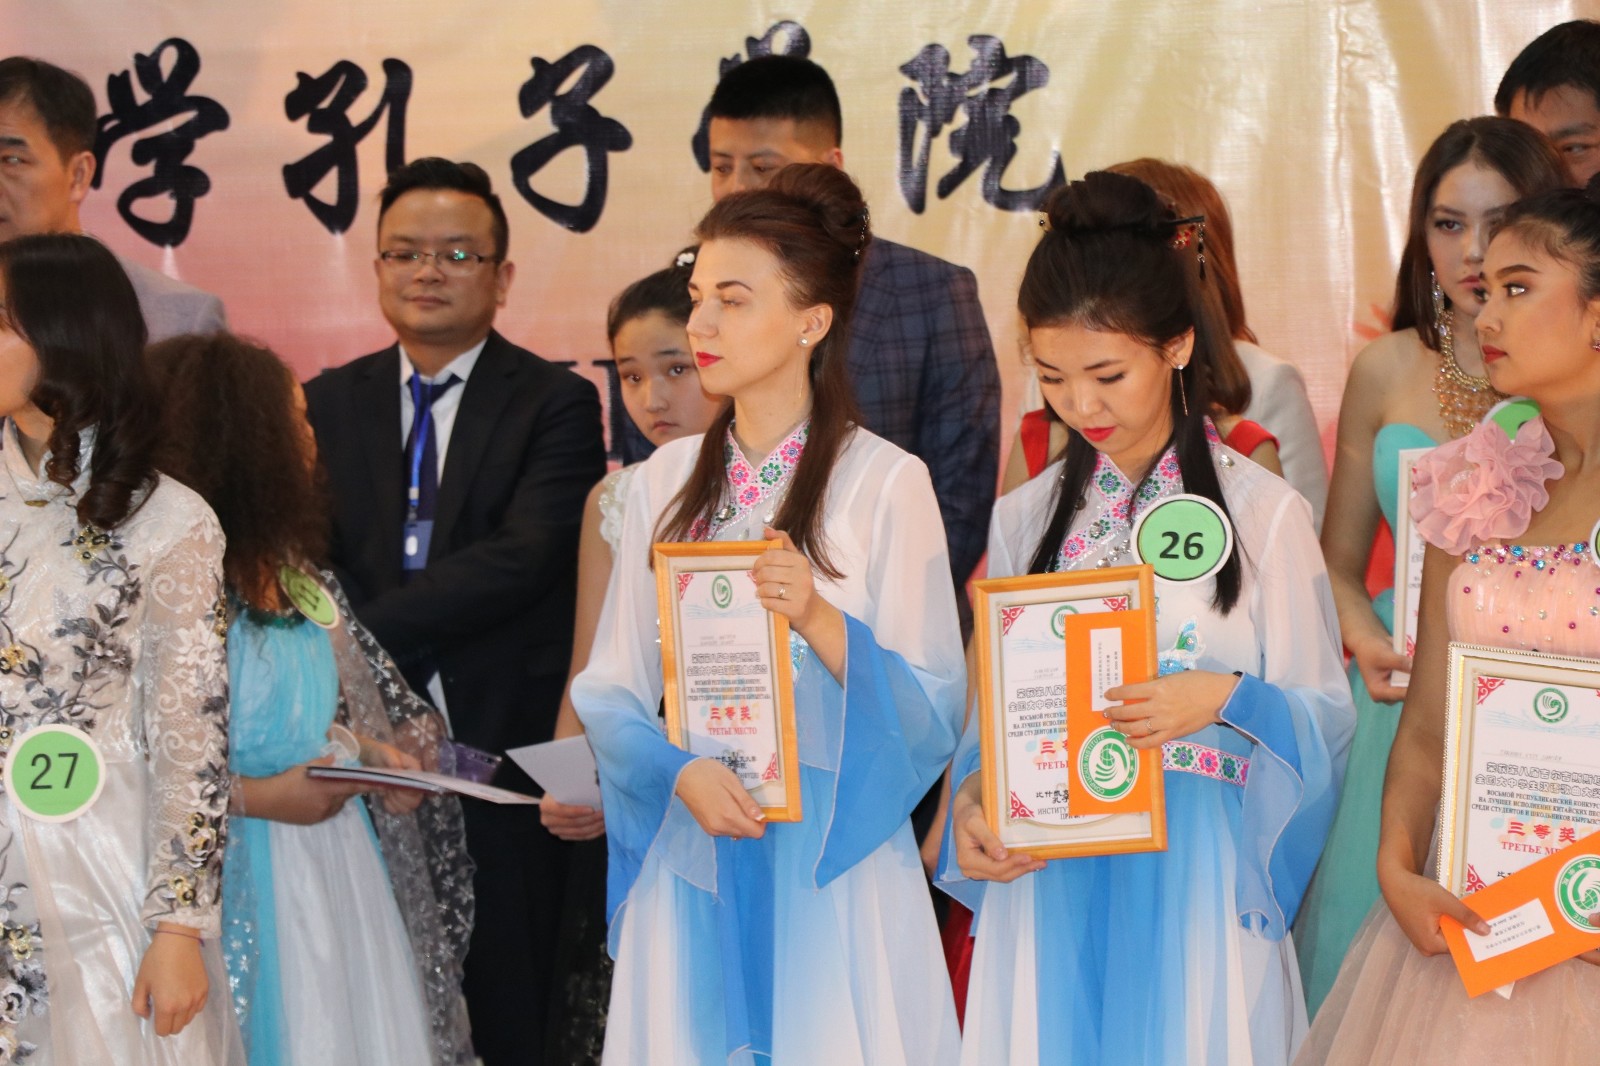 Бишкекте кытай ырларын эң мыкты аткарган жаш талант тандалып алынды